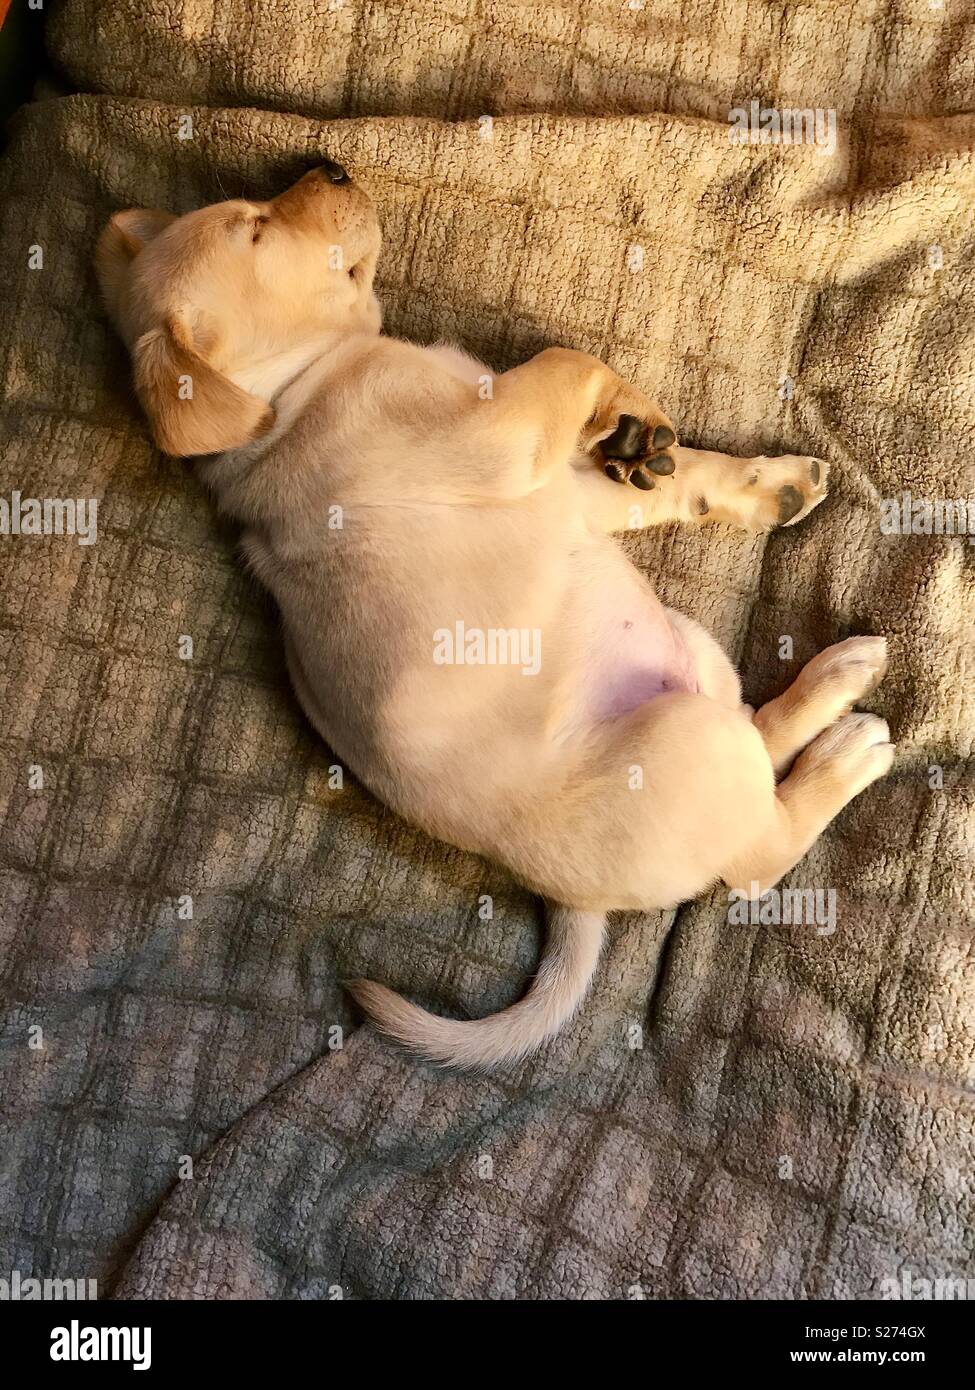 Yellow Labrador Retriever sleeping on a dog bed. Stock Photo